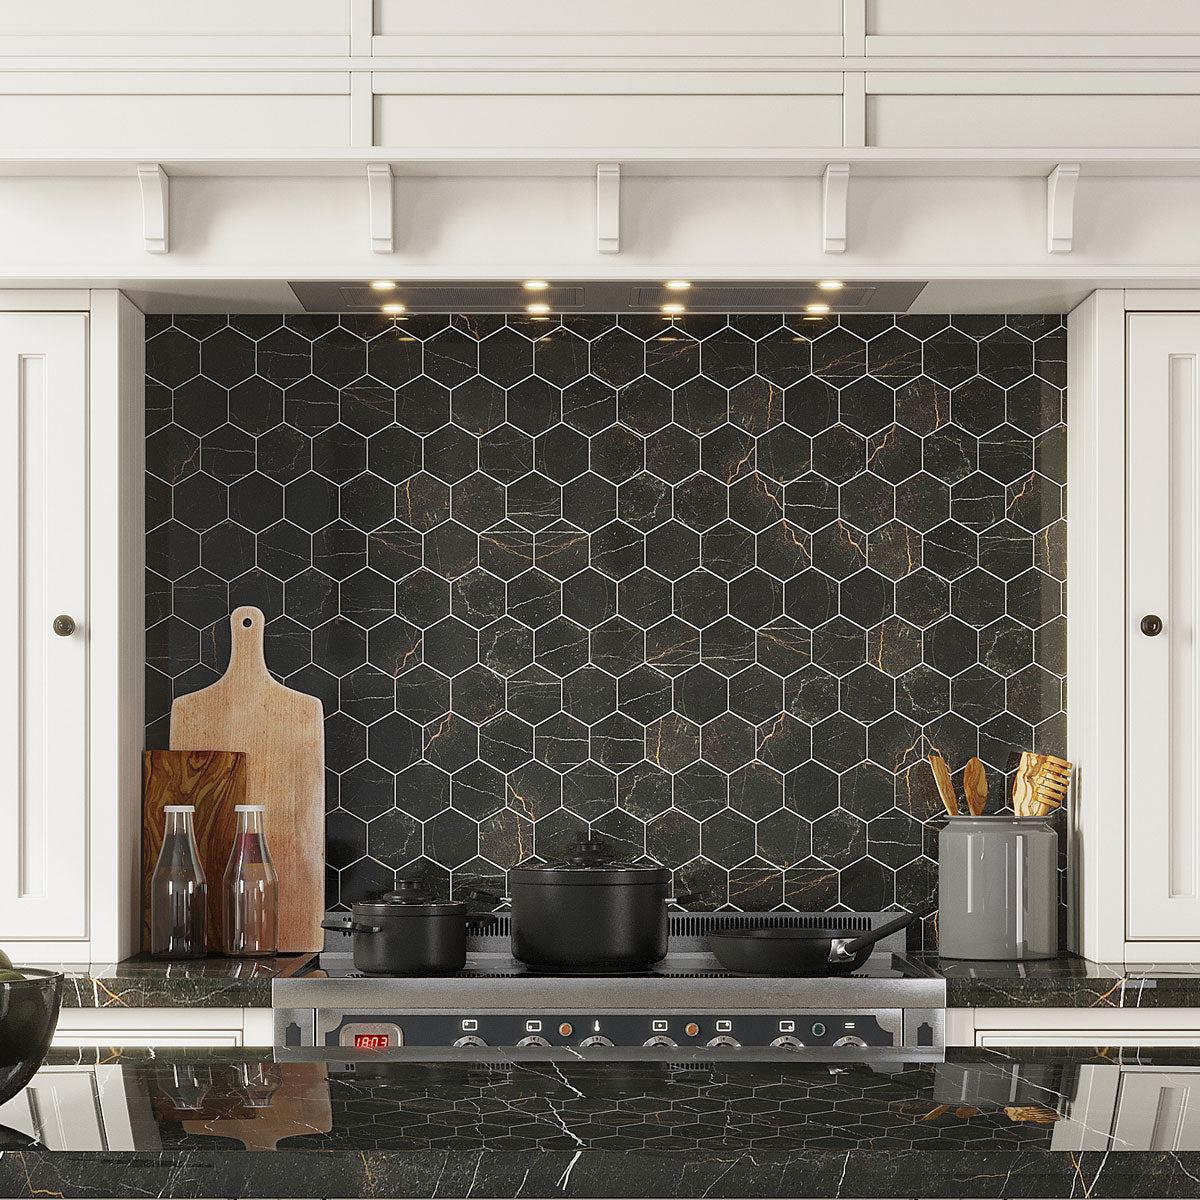 Emporio Gold Nero Hexagon Kitchen Backsplash Tiles with Stone Countertops